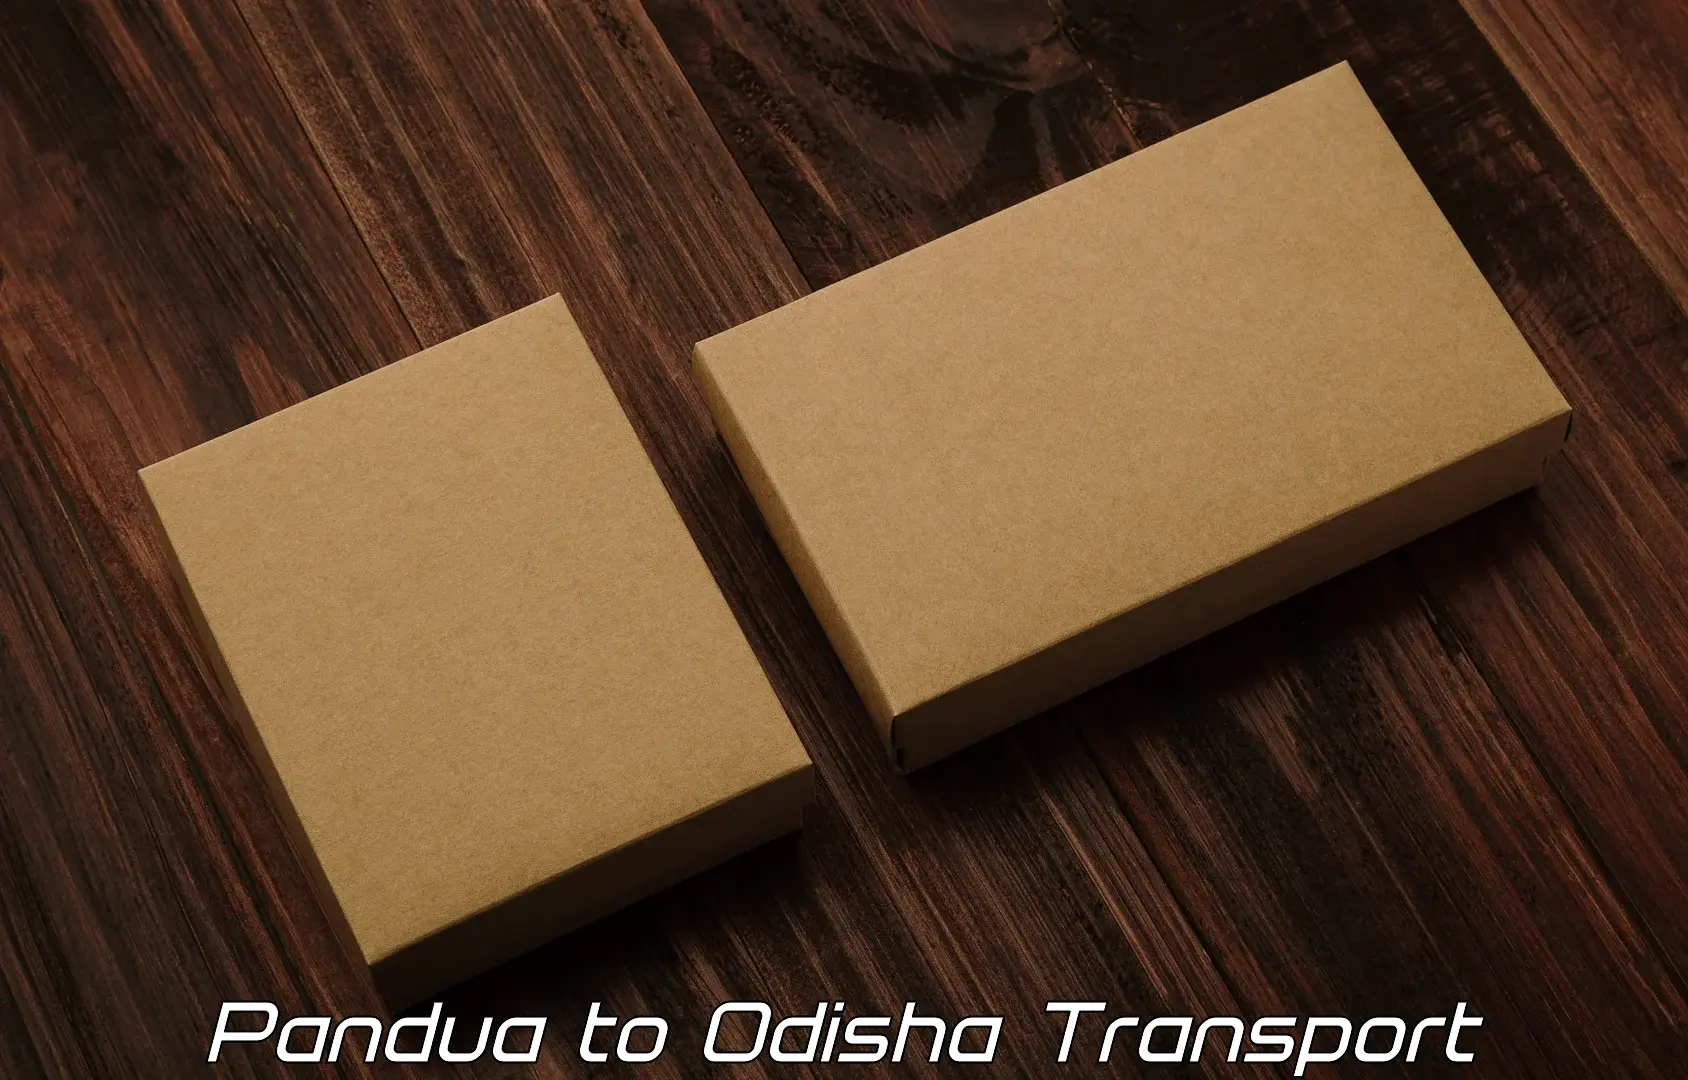 Daily transport service Pandua to Agarpada